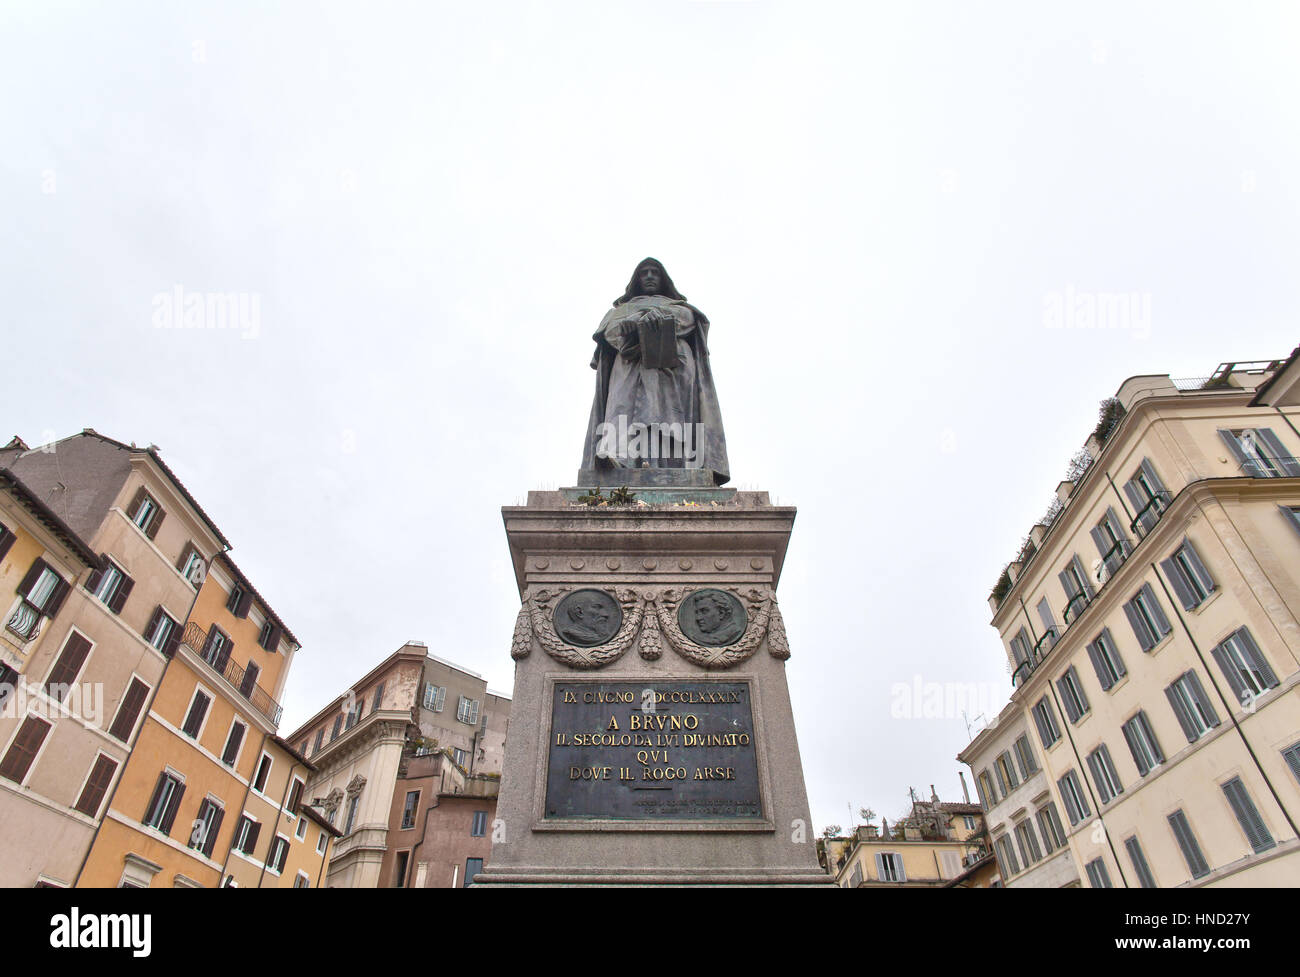 Roma, Italia - 8 Gennaio 2017: Giordano Bruno la monumentale statua in piazza Campo De' Fiori, Roma. Il monumento fu eretto nel 1889 exacty dove egli era Foto Stock